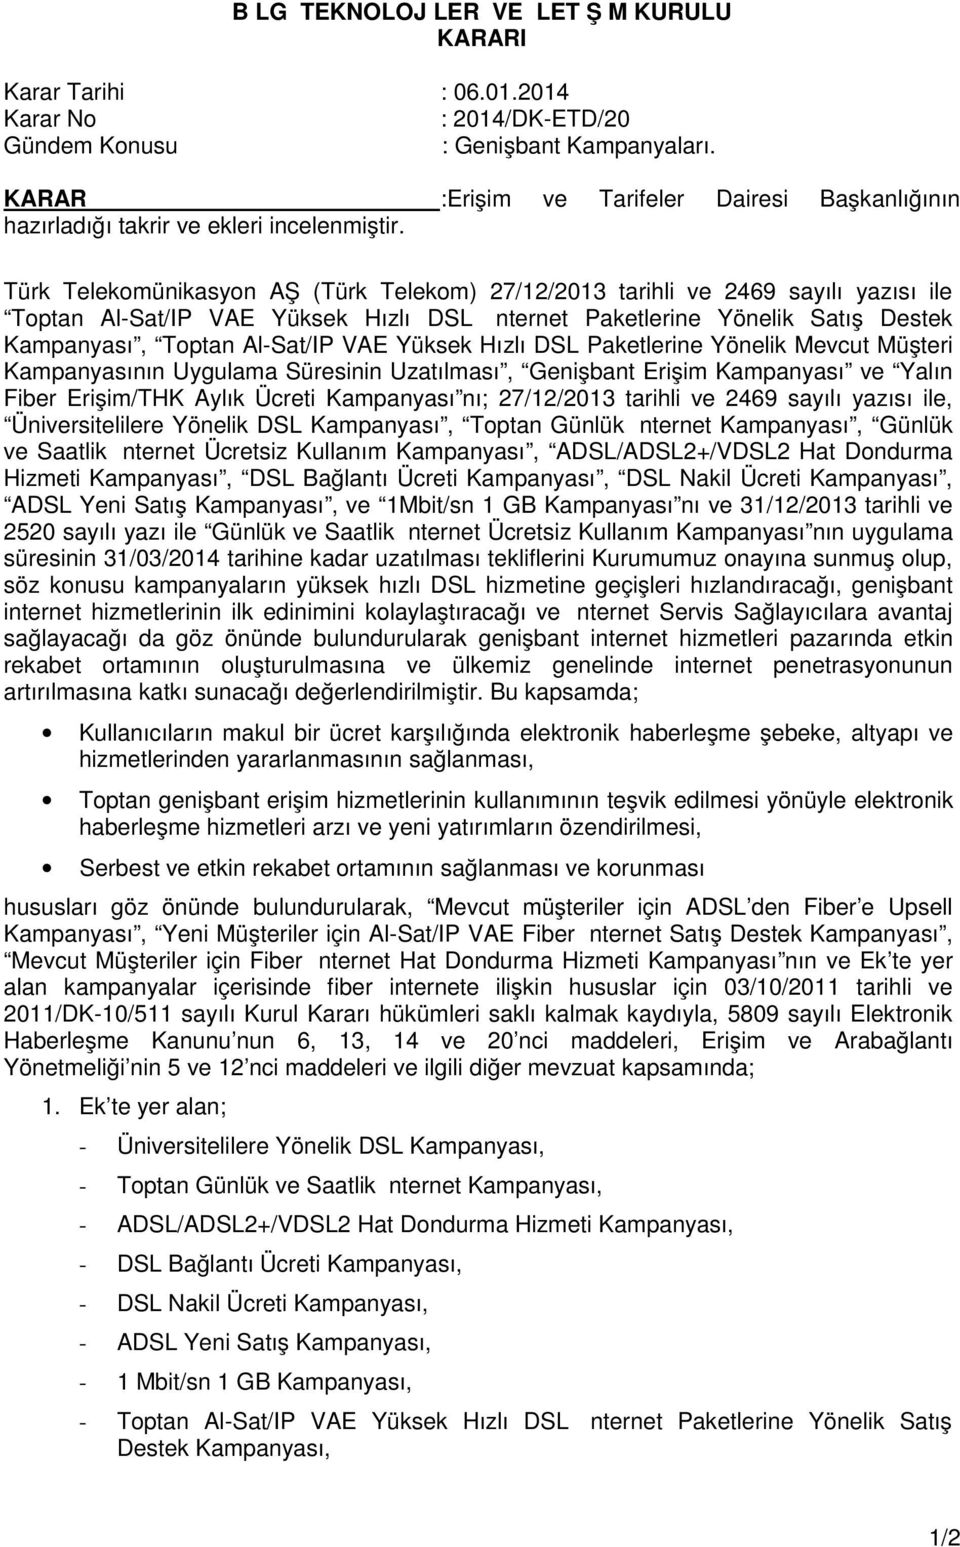 Türk Telekomünikasyon AŞ (Türk Telekom) 27/12/2013 tarihli ve 2469 sayılı yazısı ile Toptan Al-Sat/IP VAE Yüksek Hızlı DSL İnternet Paketlerine Yönelik Satış Destek Kampanyası, Toptan Al-Sat/IP VAE